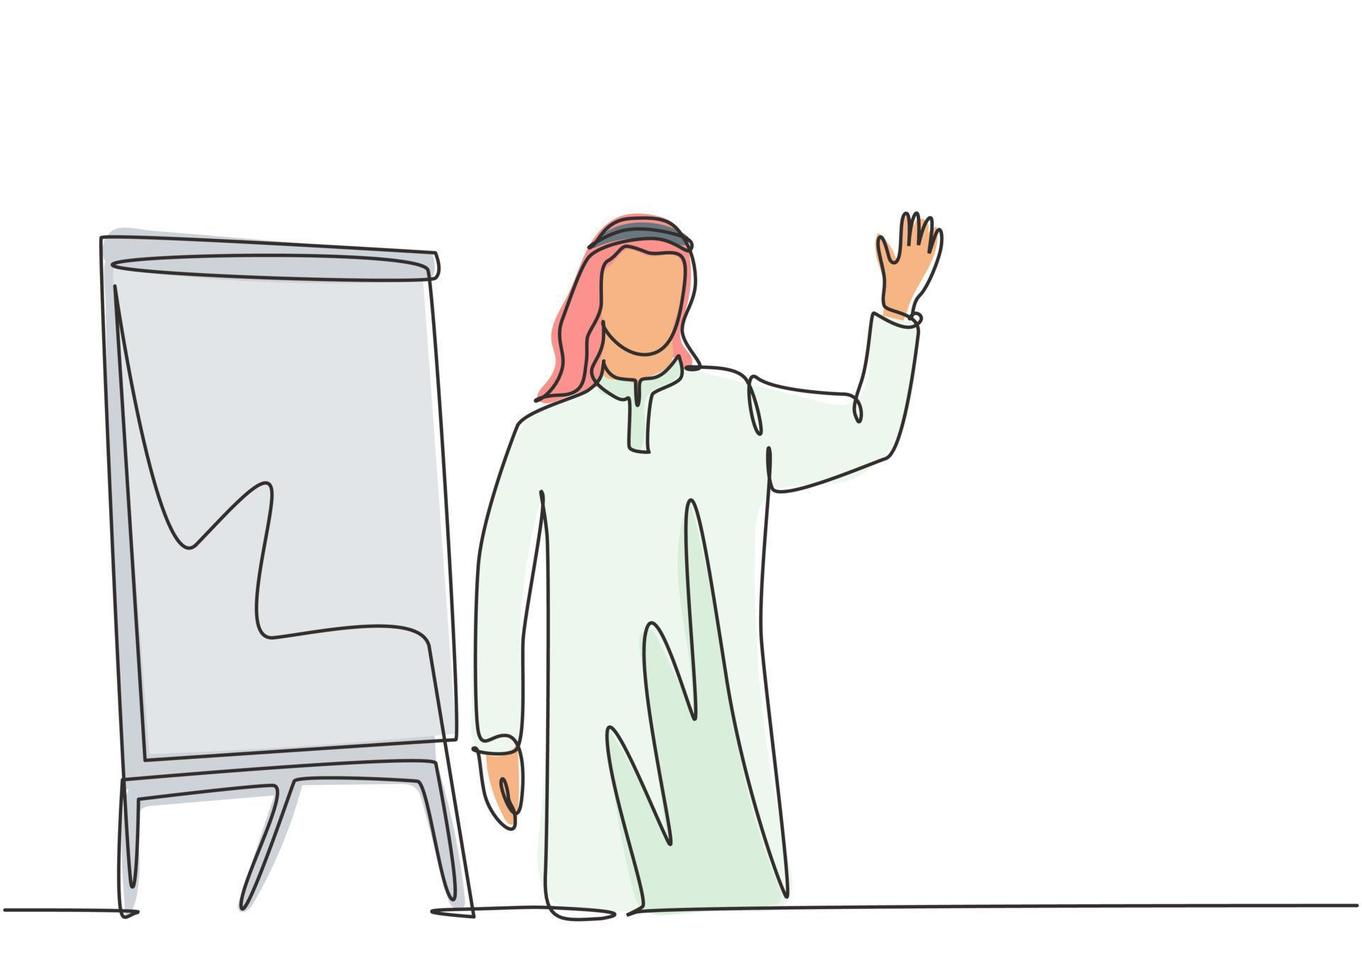 desenho de linha única contínua do jovem fundador de uma startup muçulmana fazer uma apresentação para os membros da equipe da empresa. pano do Oriente Médio árabe shmagh, kandura, thawb, robe. ilustração em vetor desenho desenho de uma linha